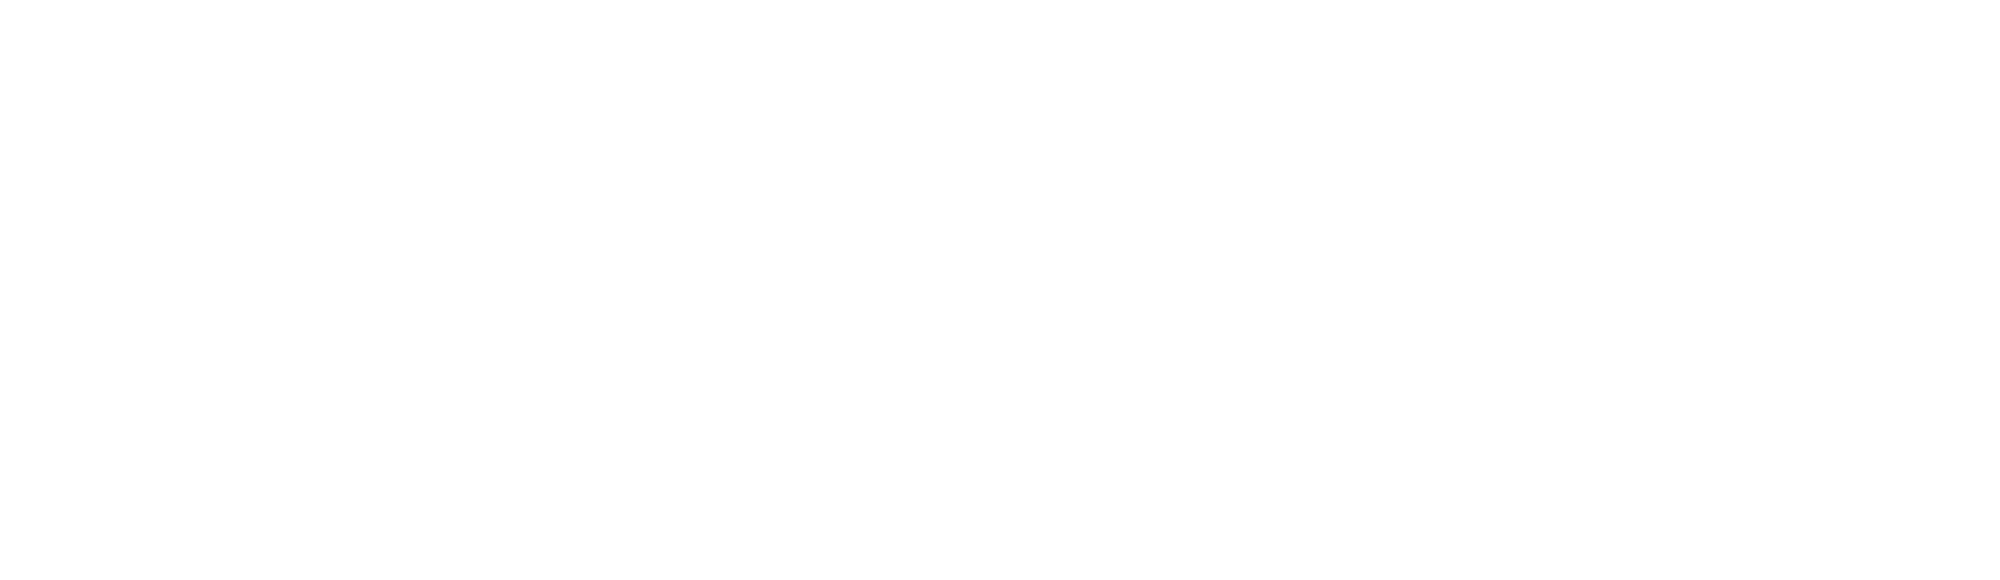 W_GENERALITAT_DE_CATALUNYA-1